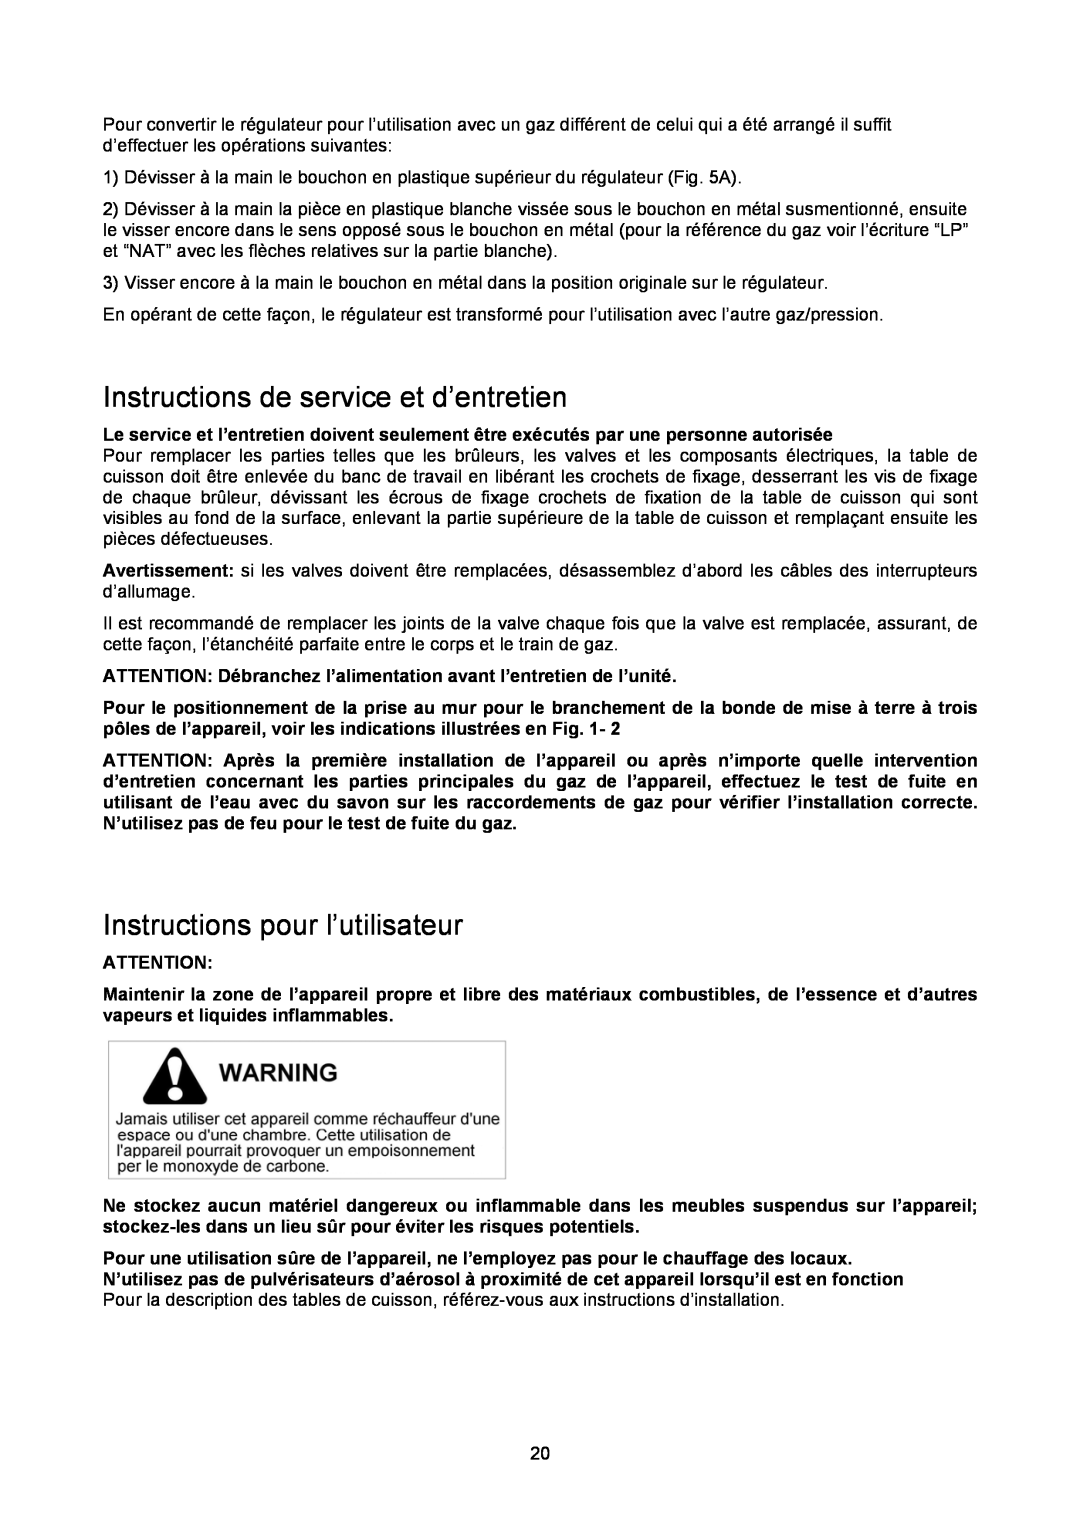 Bertazzoni P34 5 00 X dimensions Instructions de service et d’entretien, Instructions pour l’utilisateur 